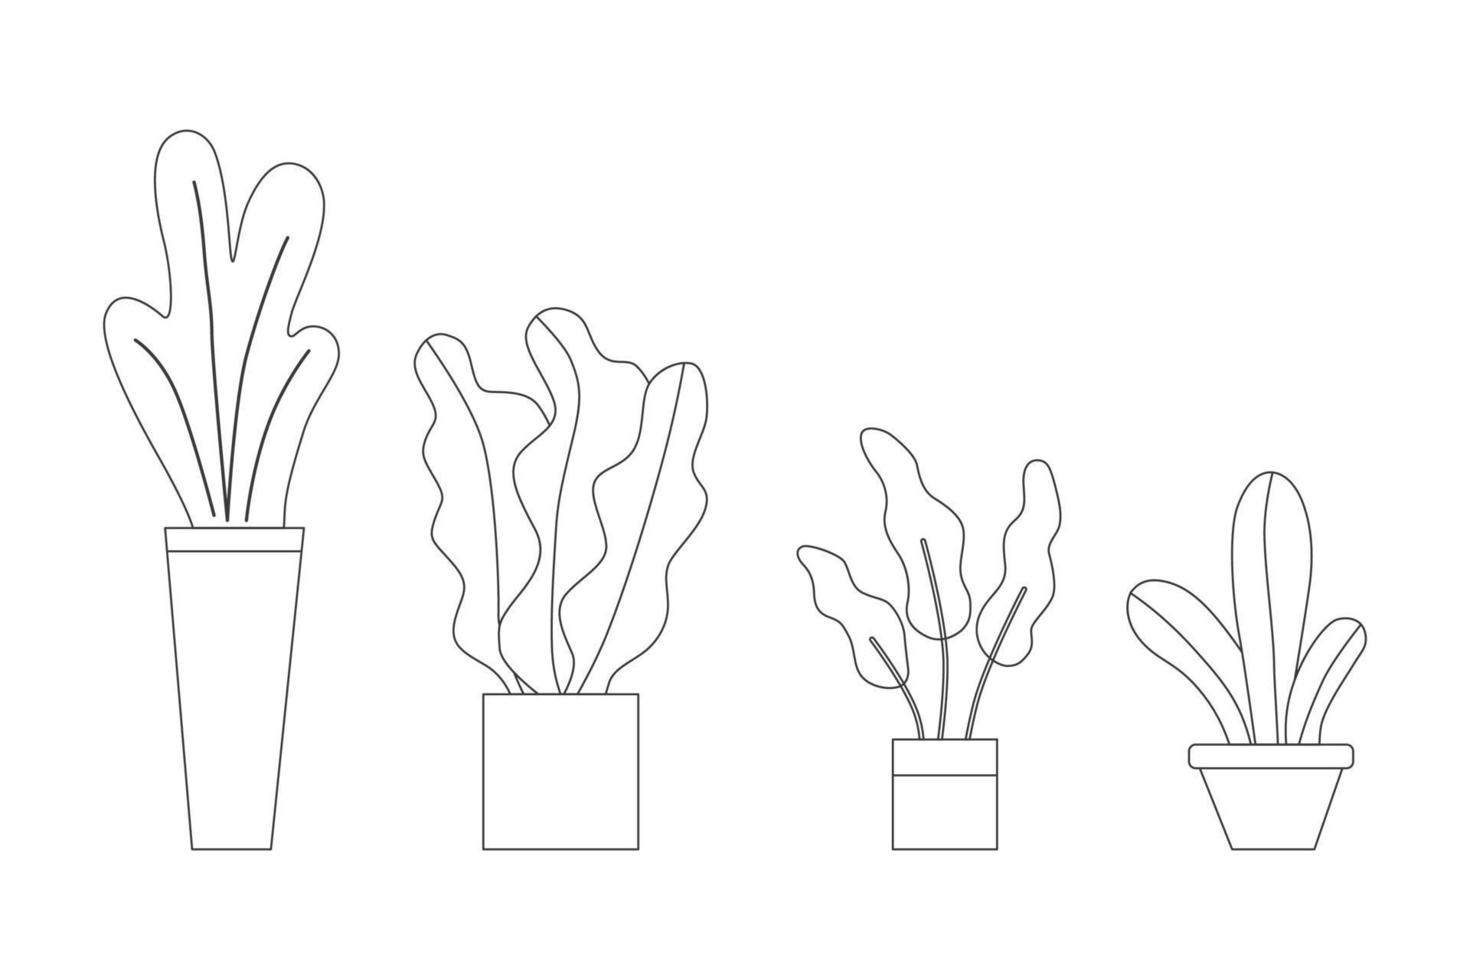 ingemaakt planten verzameling gesorteerd in bestellen groot naar klein door zwart dun lijn reeks verzameling illustratie. vector